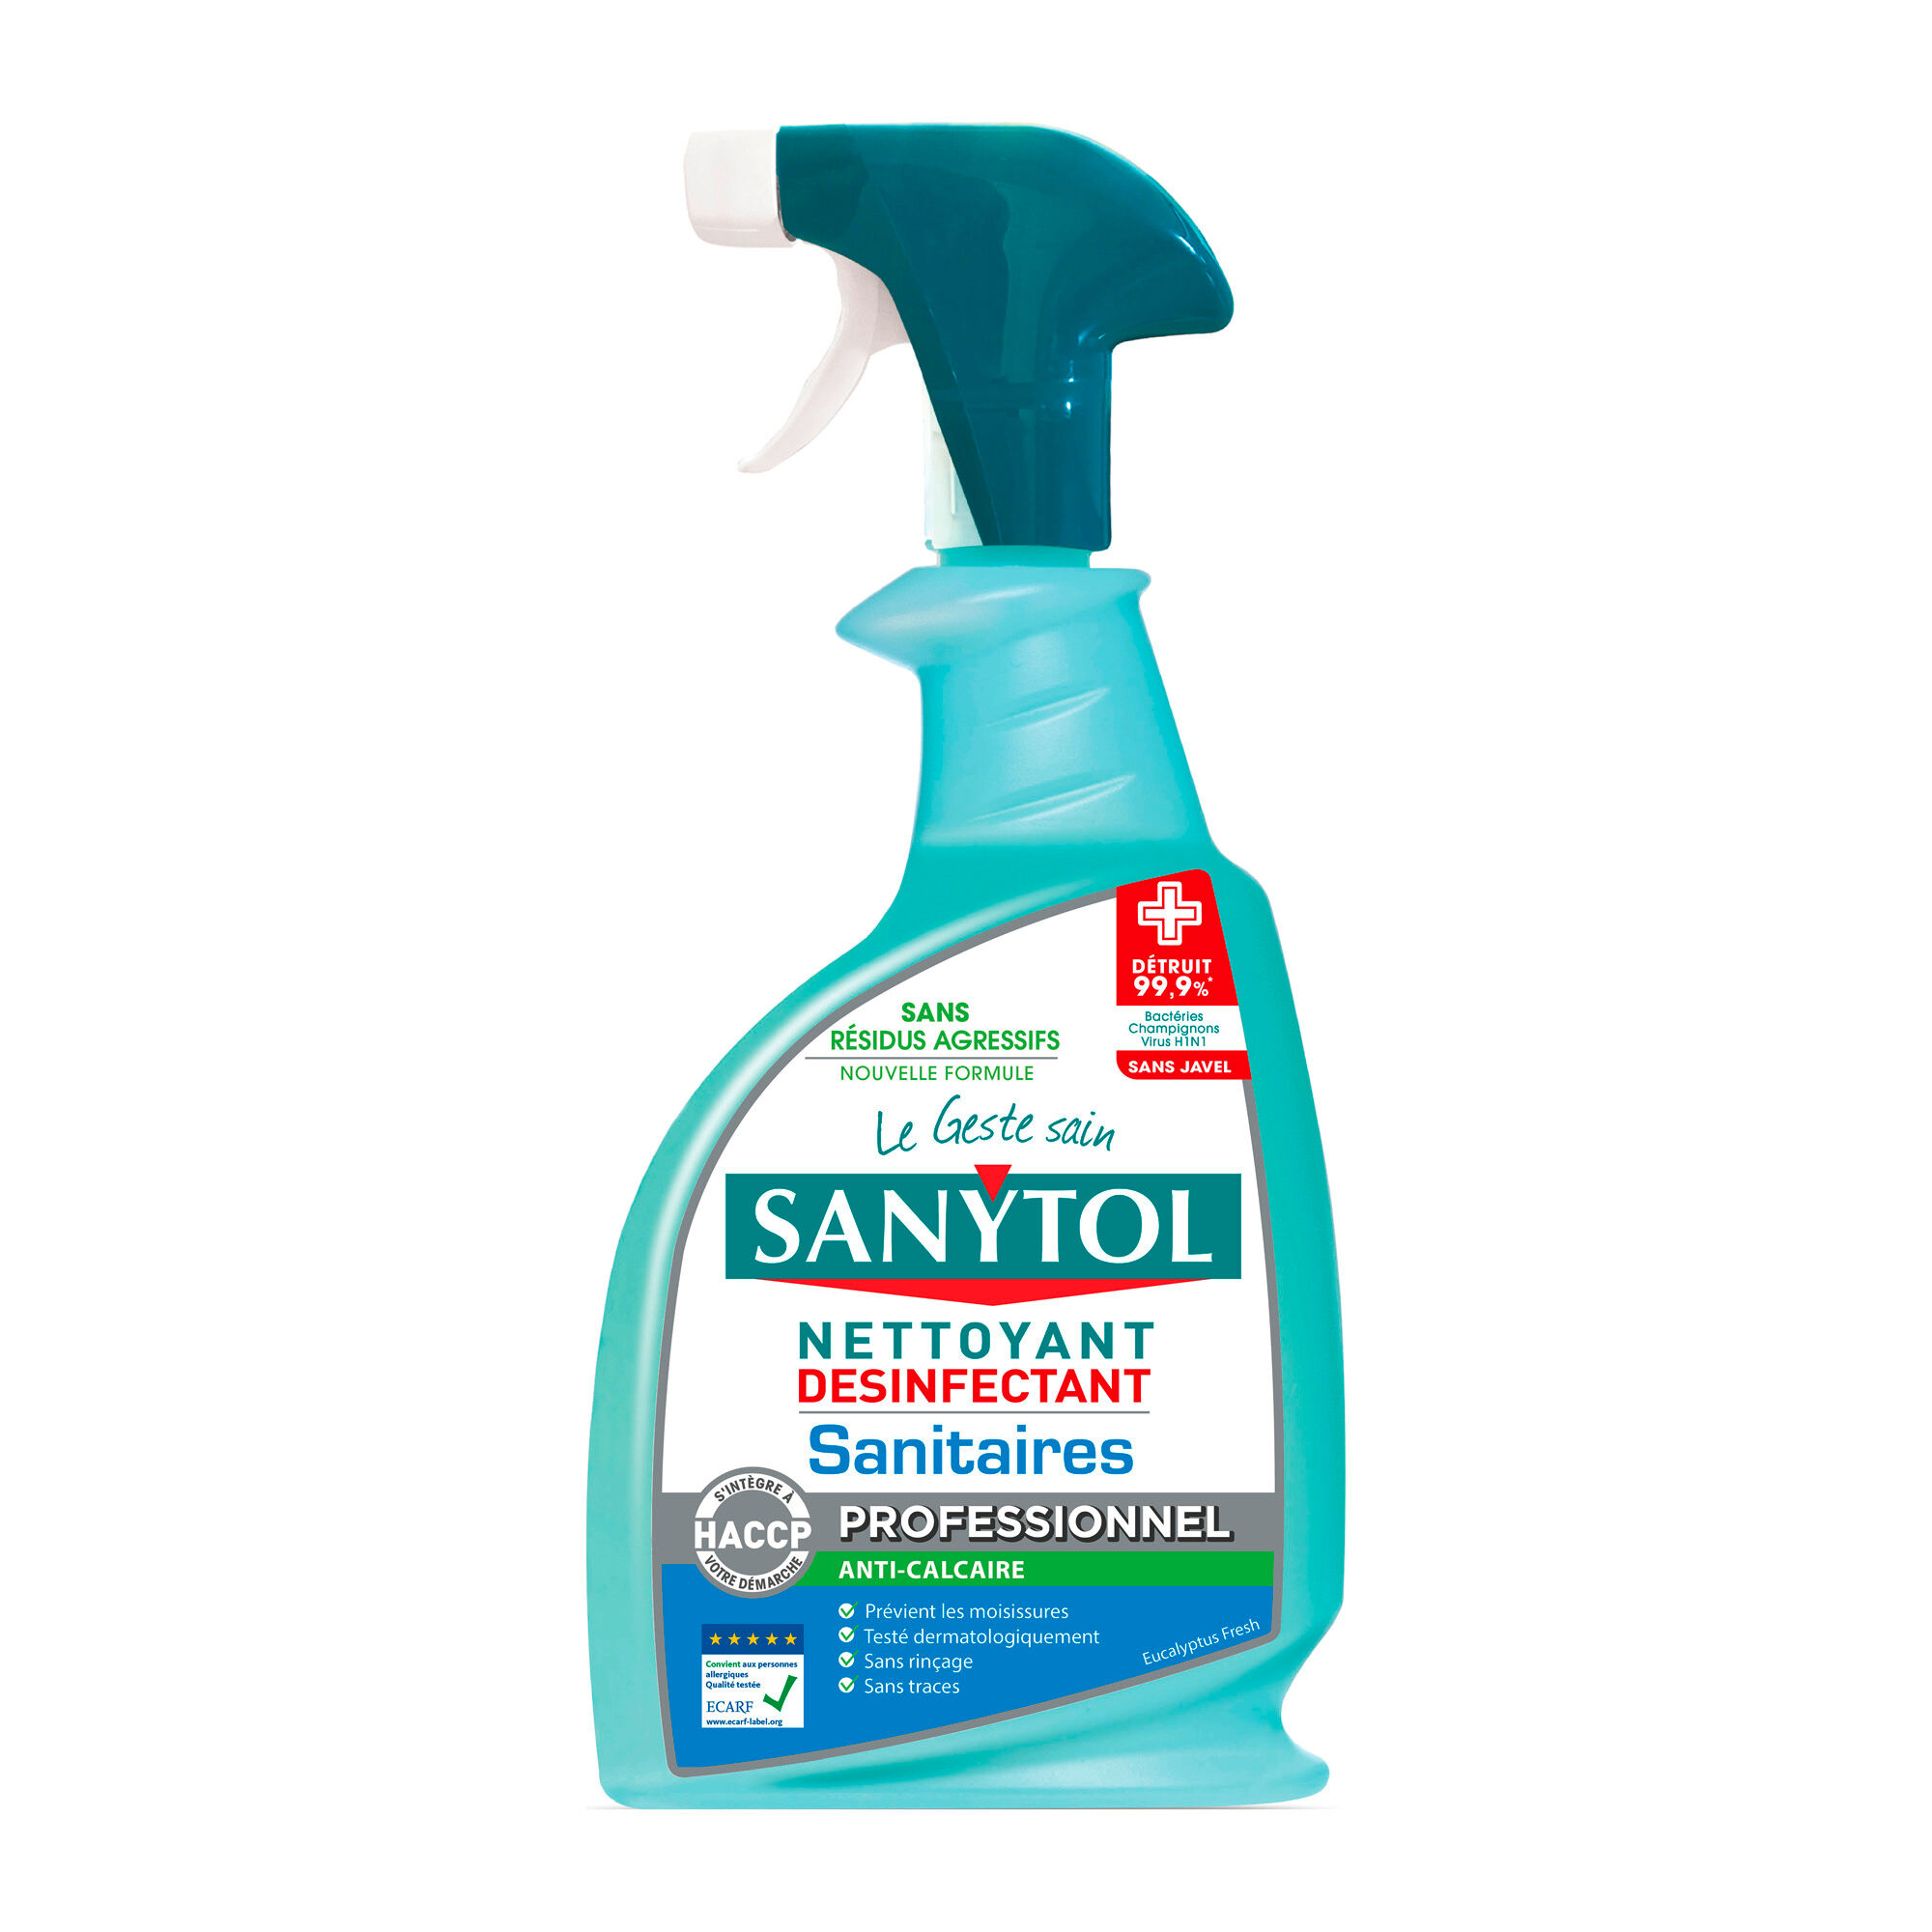 Nettoyant désinfectant anti-calcaire sanitaires Sanytol Professionnel - Spray de 750 ml